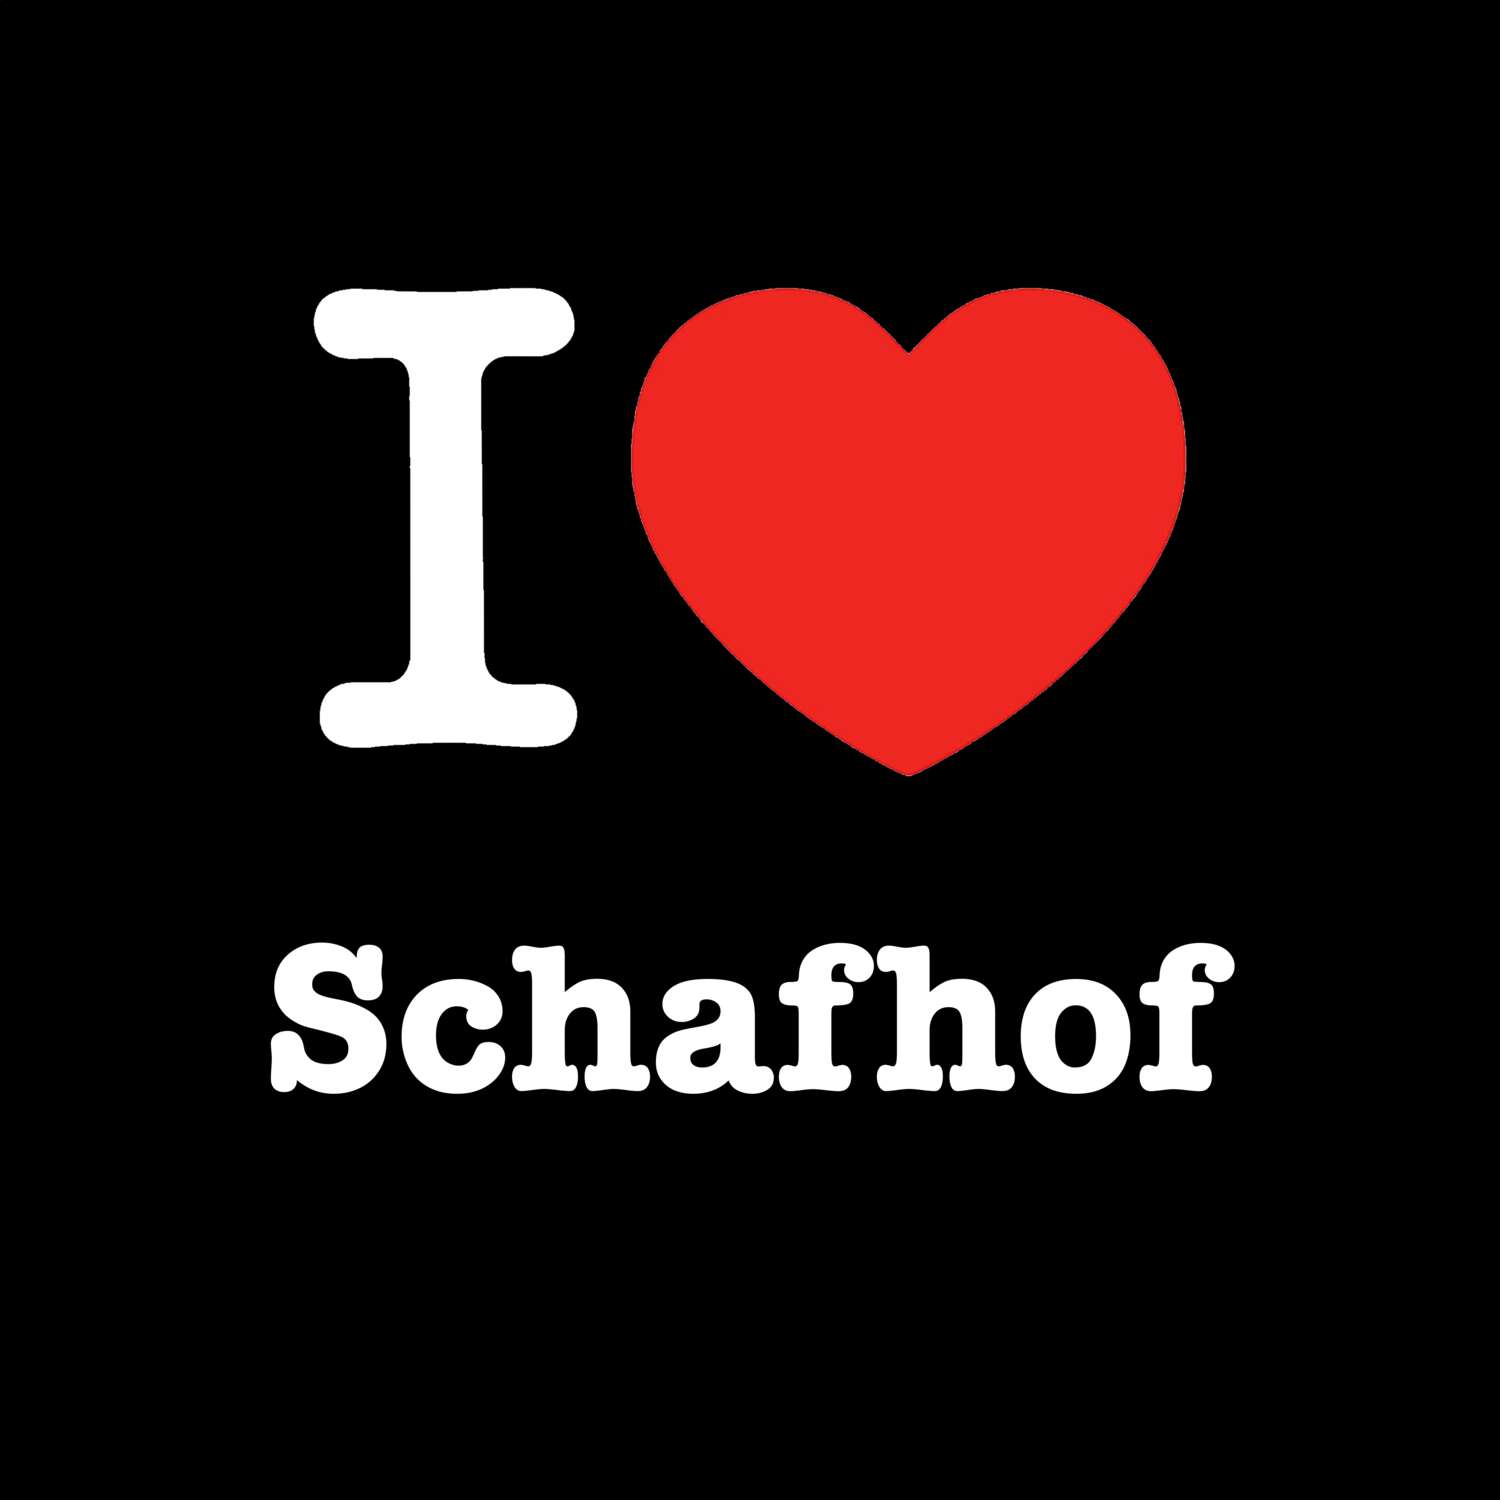 Schafhof T-Shirt »I love«